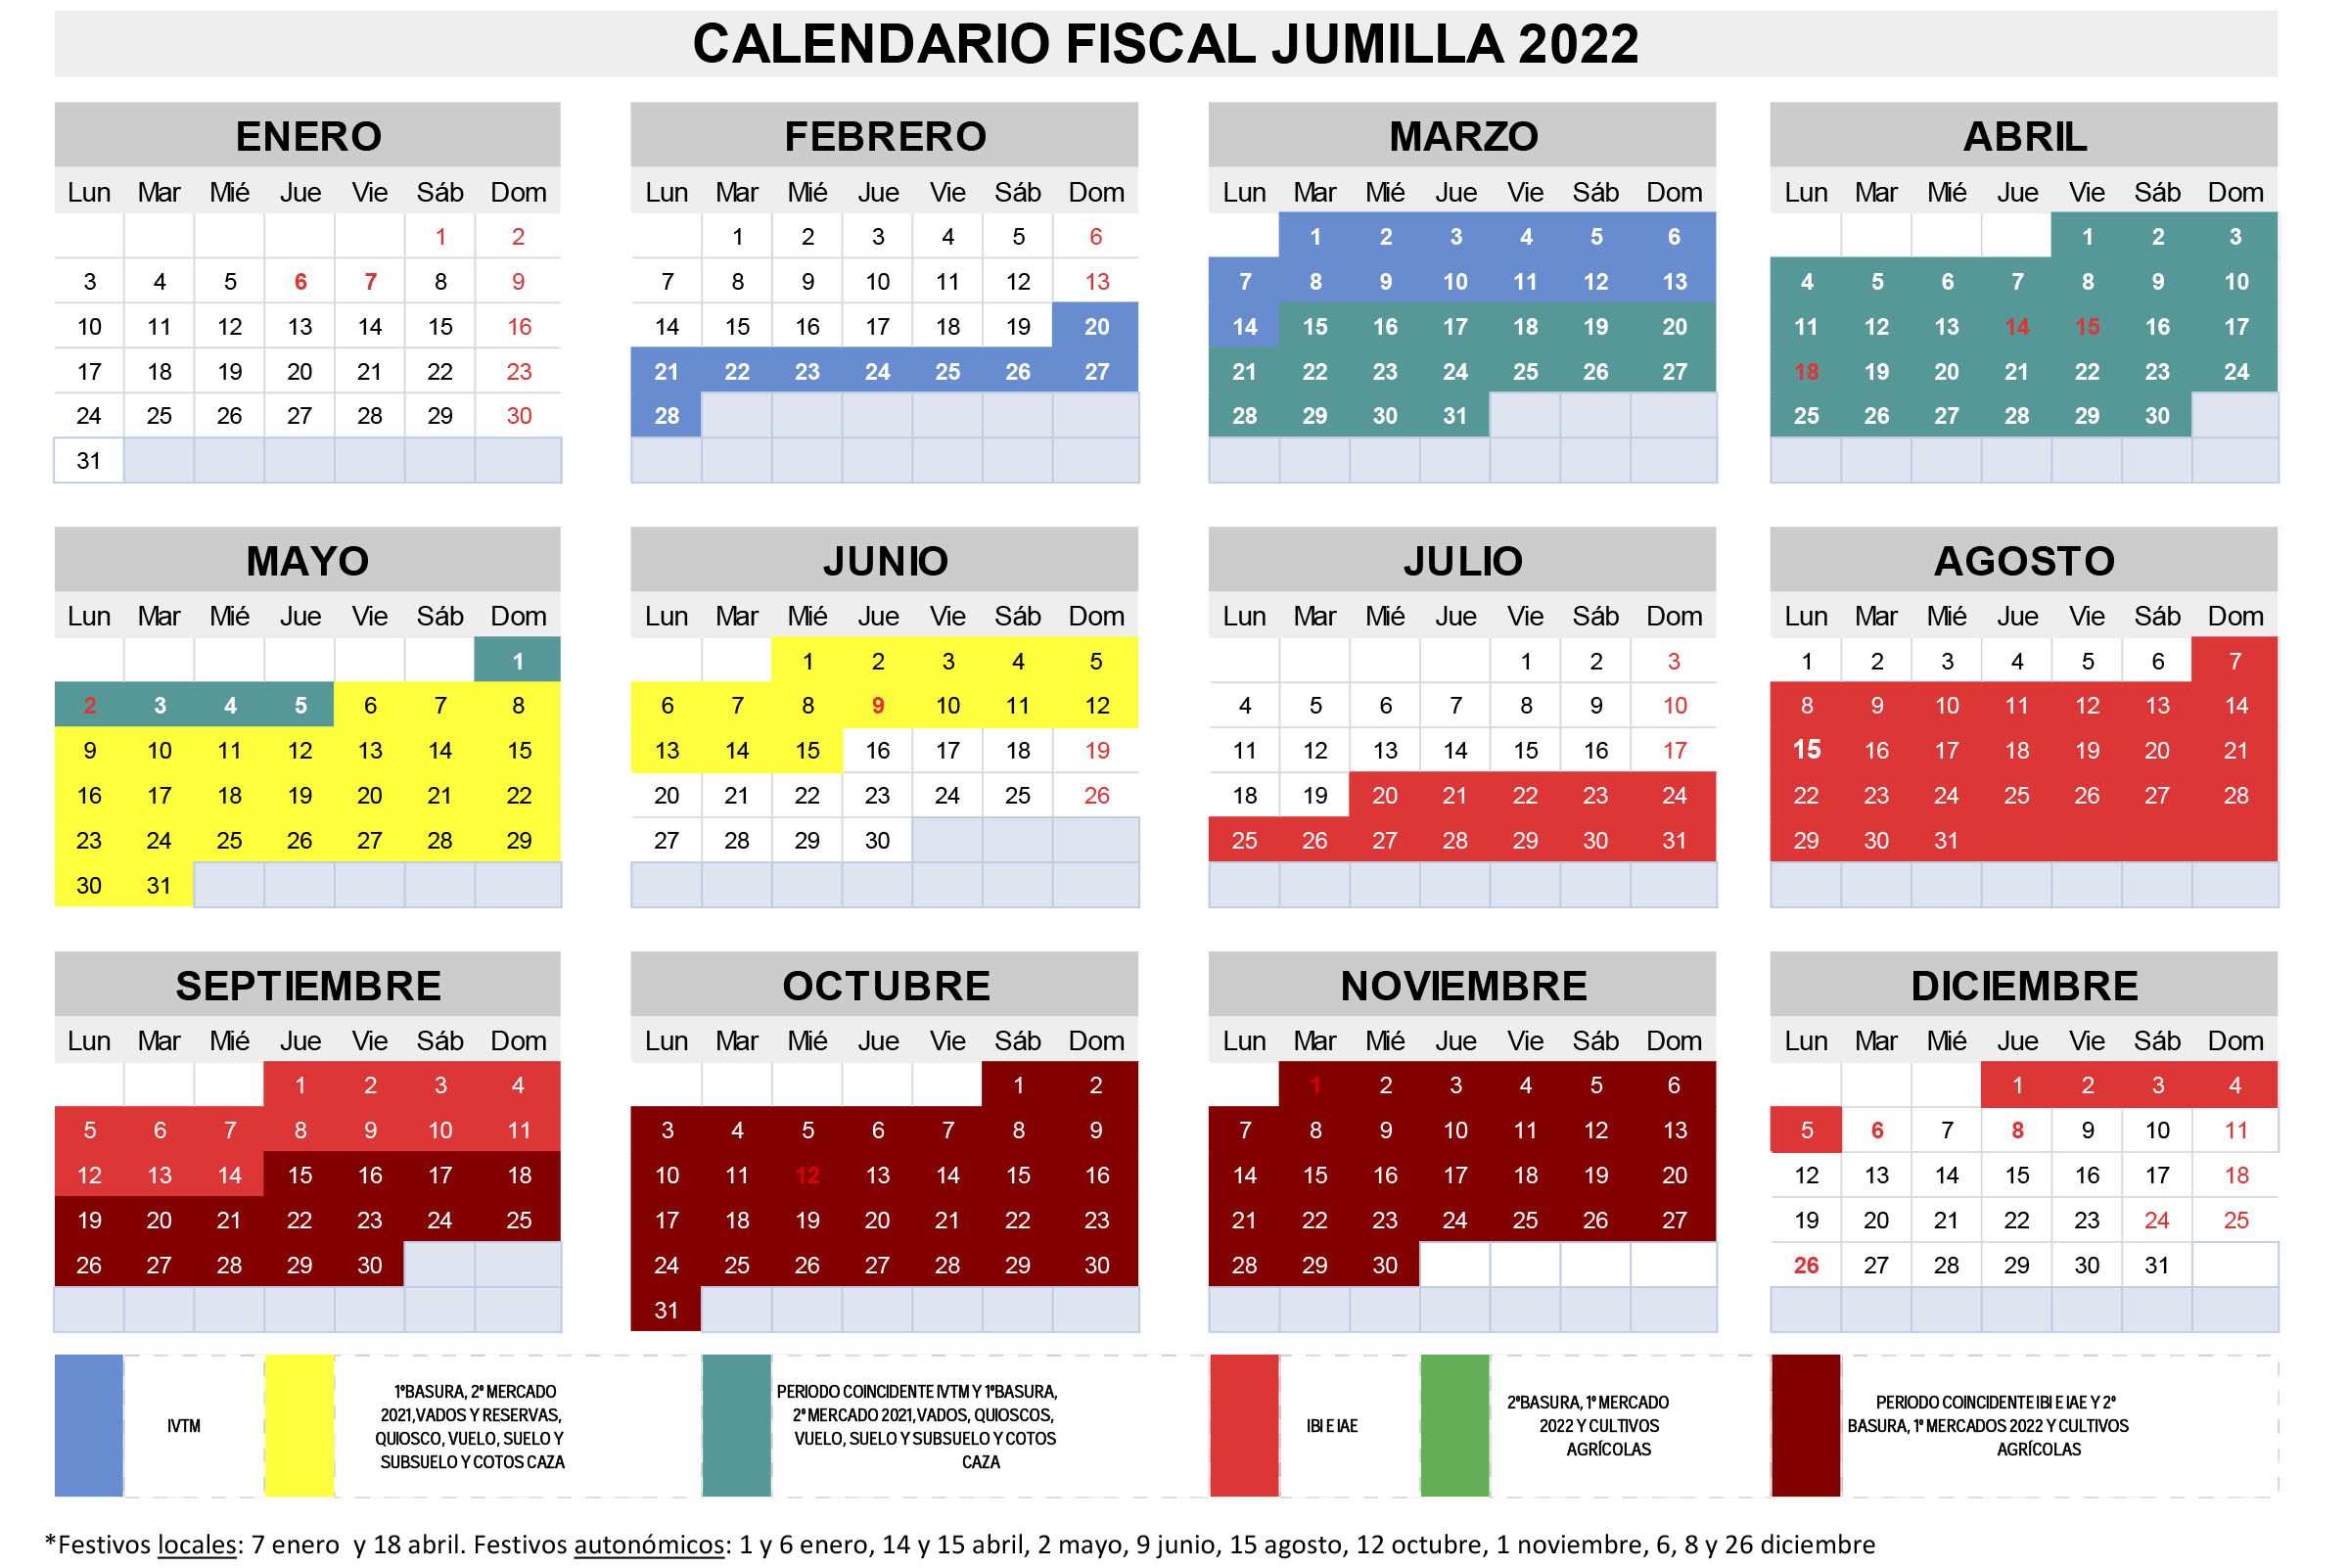 Hacienda hace públicas las fechas clave del calendario fiscal de 2022